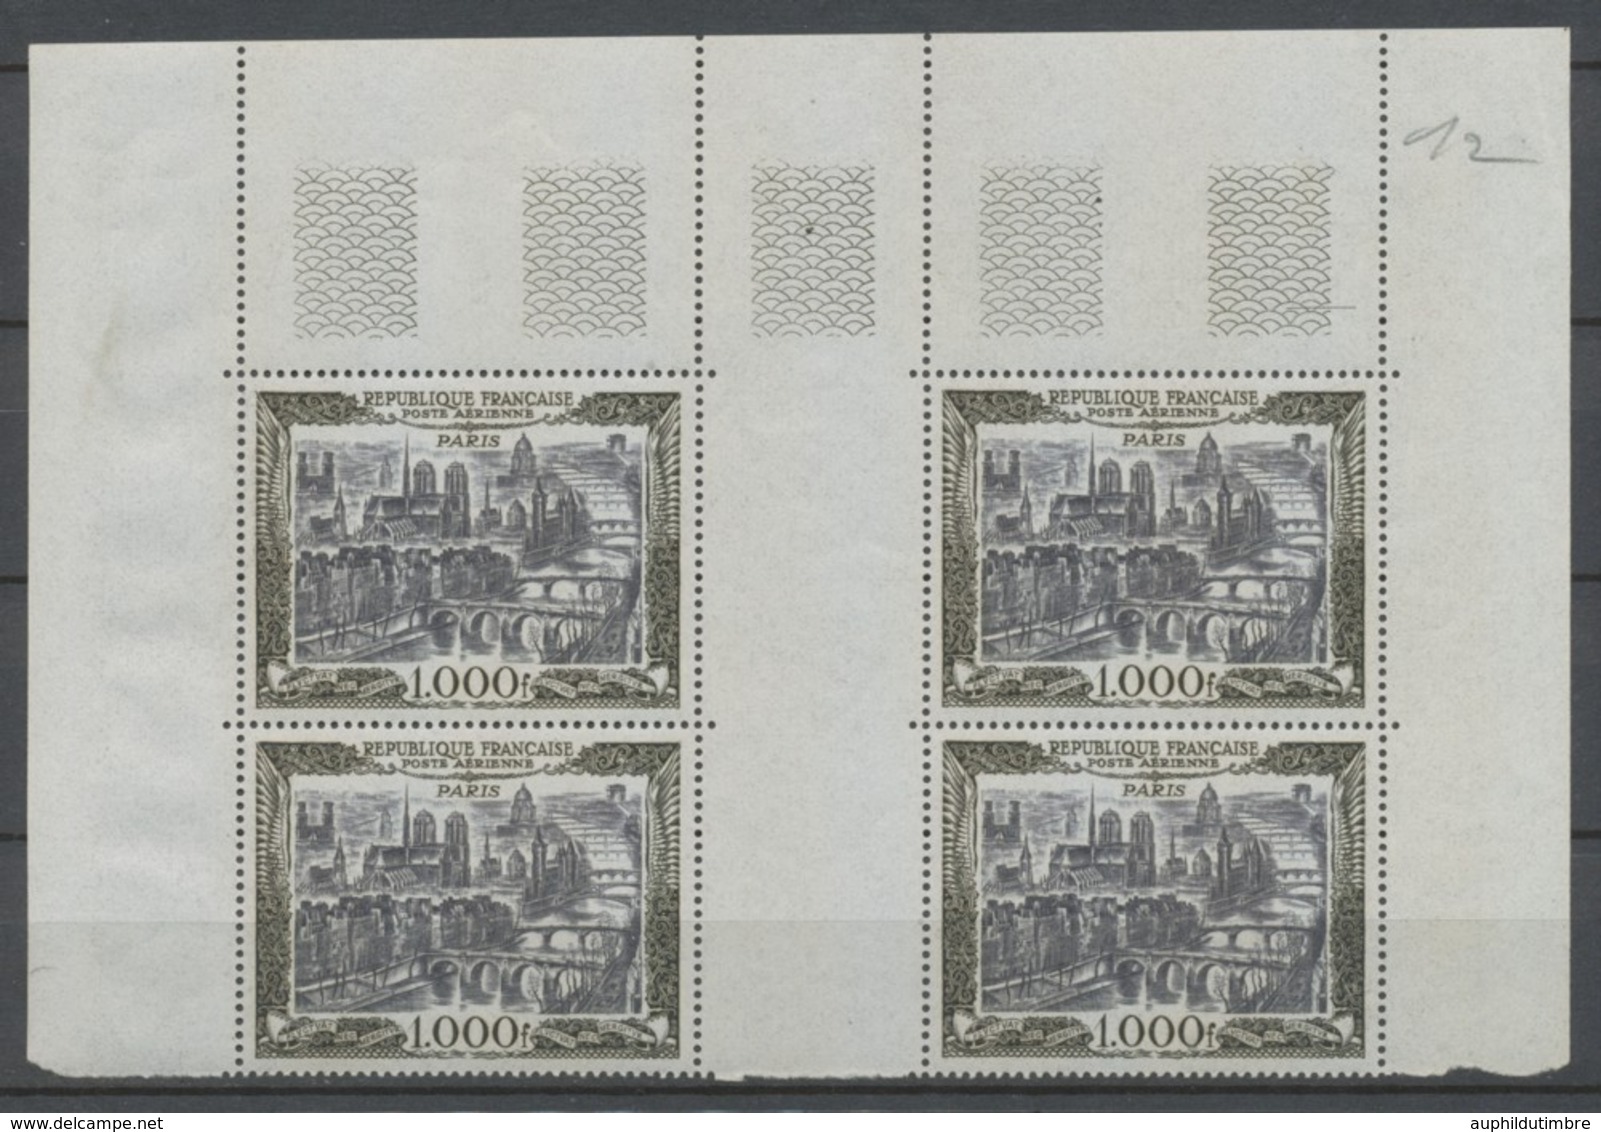 FRANCE Poste Aérienne Bloc De 4 N°29 C.D.F NEUF LUXE ** COTE 660€ P1824 - 1927-1959 Mint/hinged